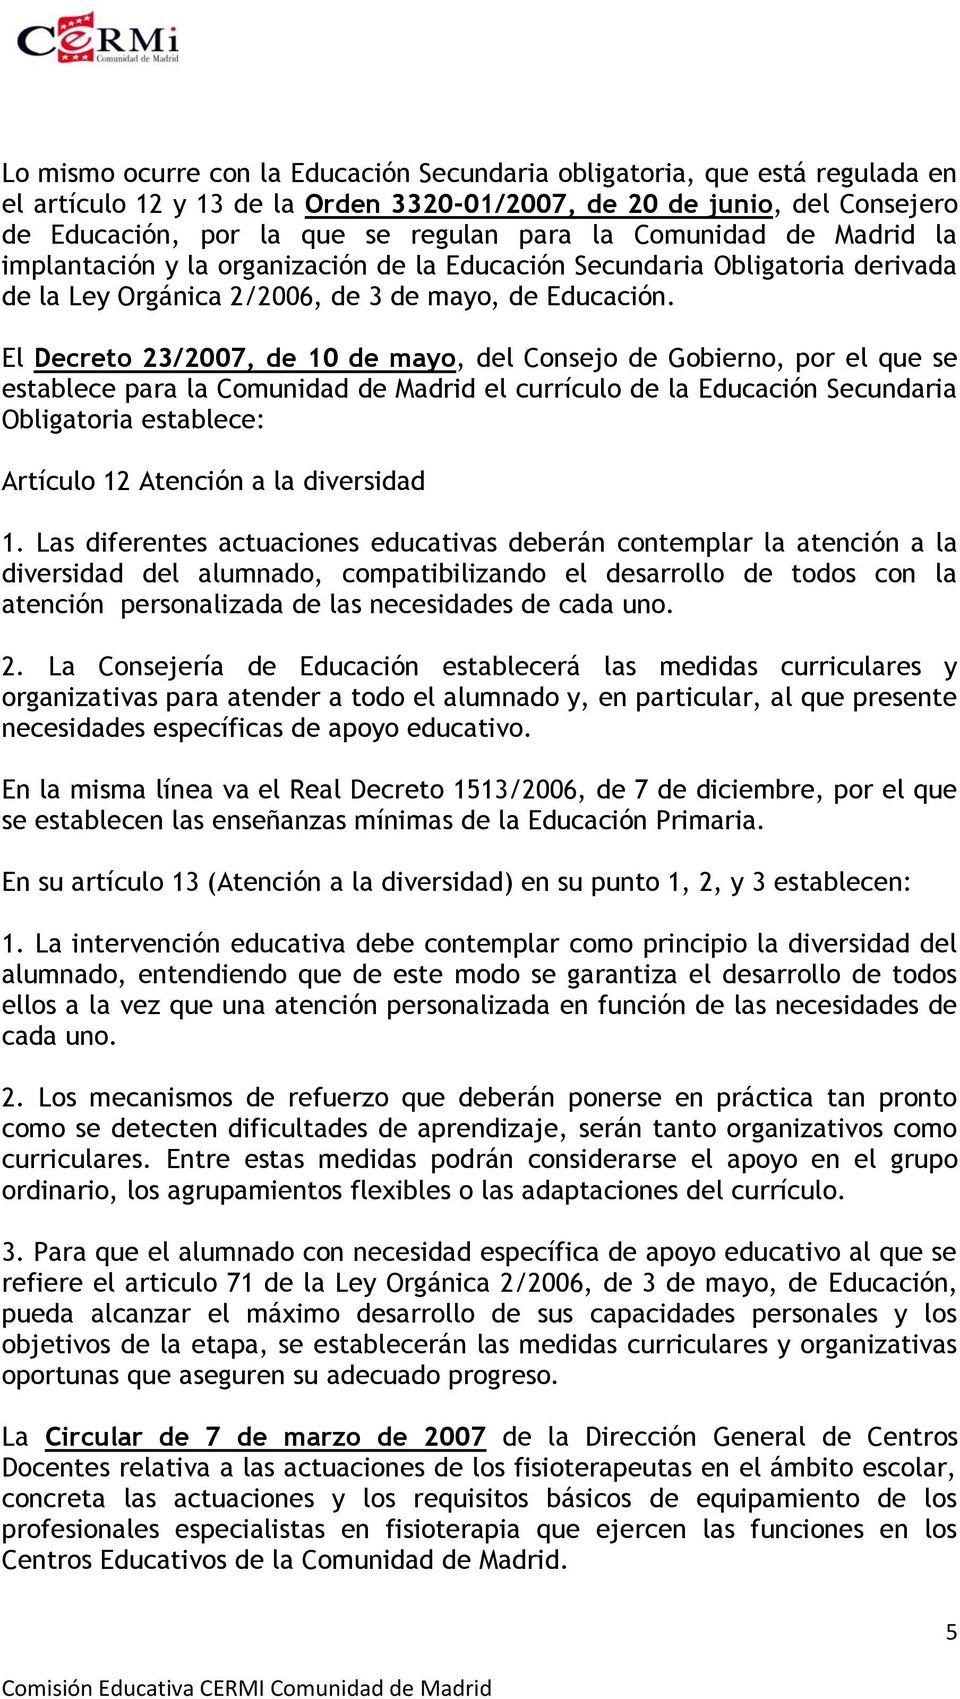 El Decreto 23/2007, de 10 de mayo, del Consejo de Gobierno, por el que se establece para la Comunidad de Madrid el currículo de la Educación Secundaria Obligatoria establece: Artículo 12 Atención a